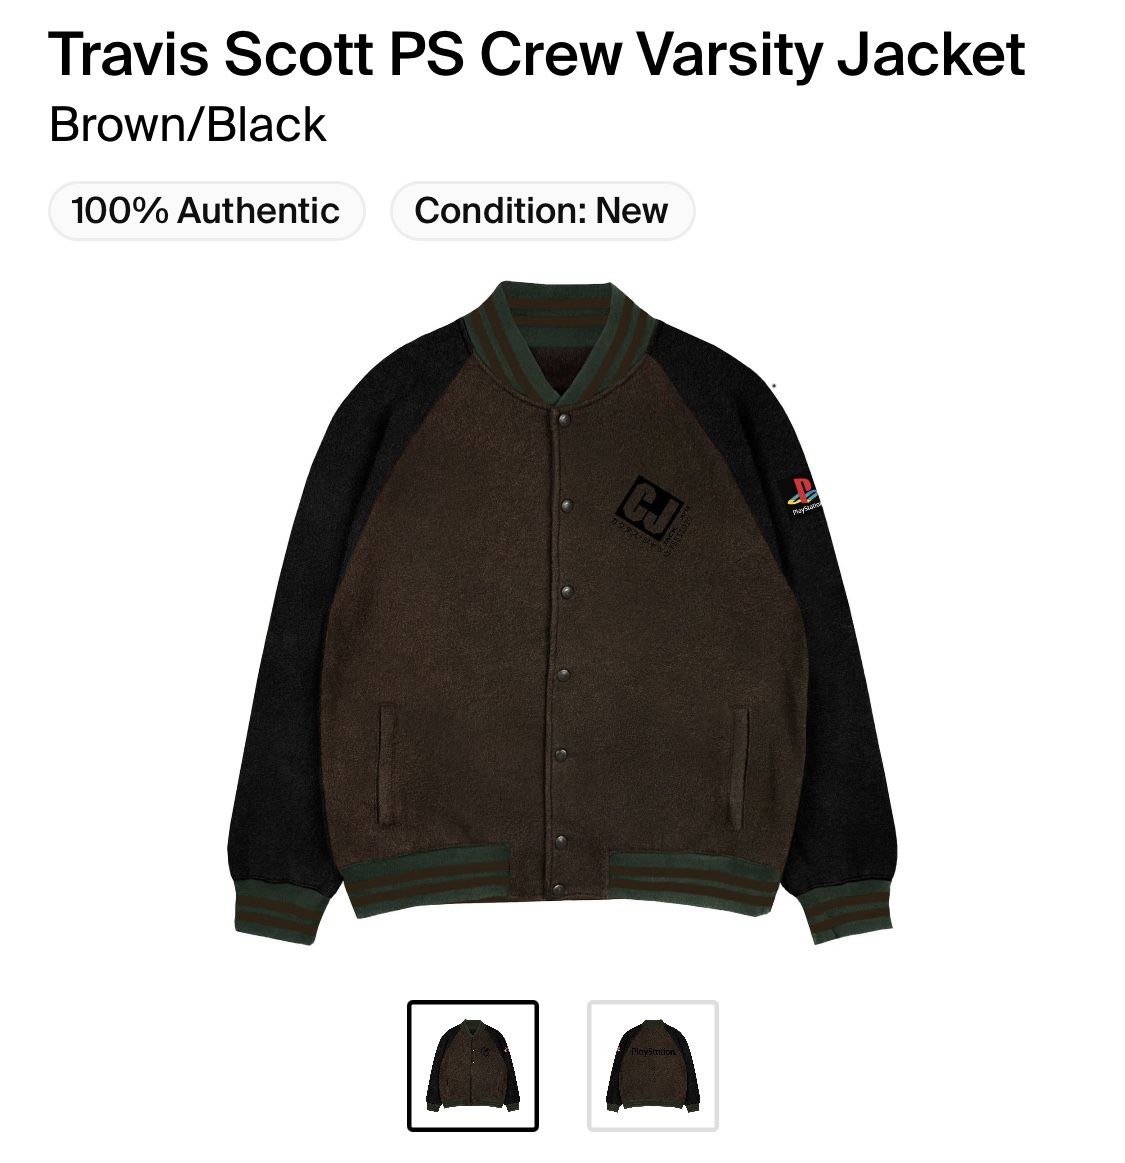 Travis Scott PS Crew Varsity Jacket Brown/Black Men's - FW20 - US